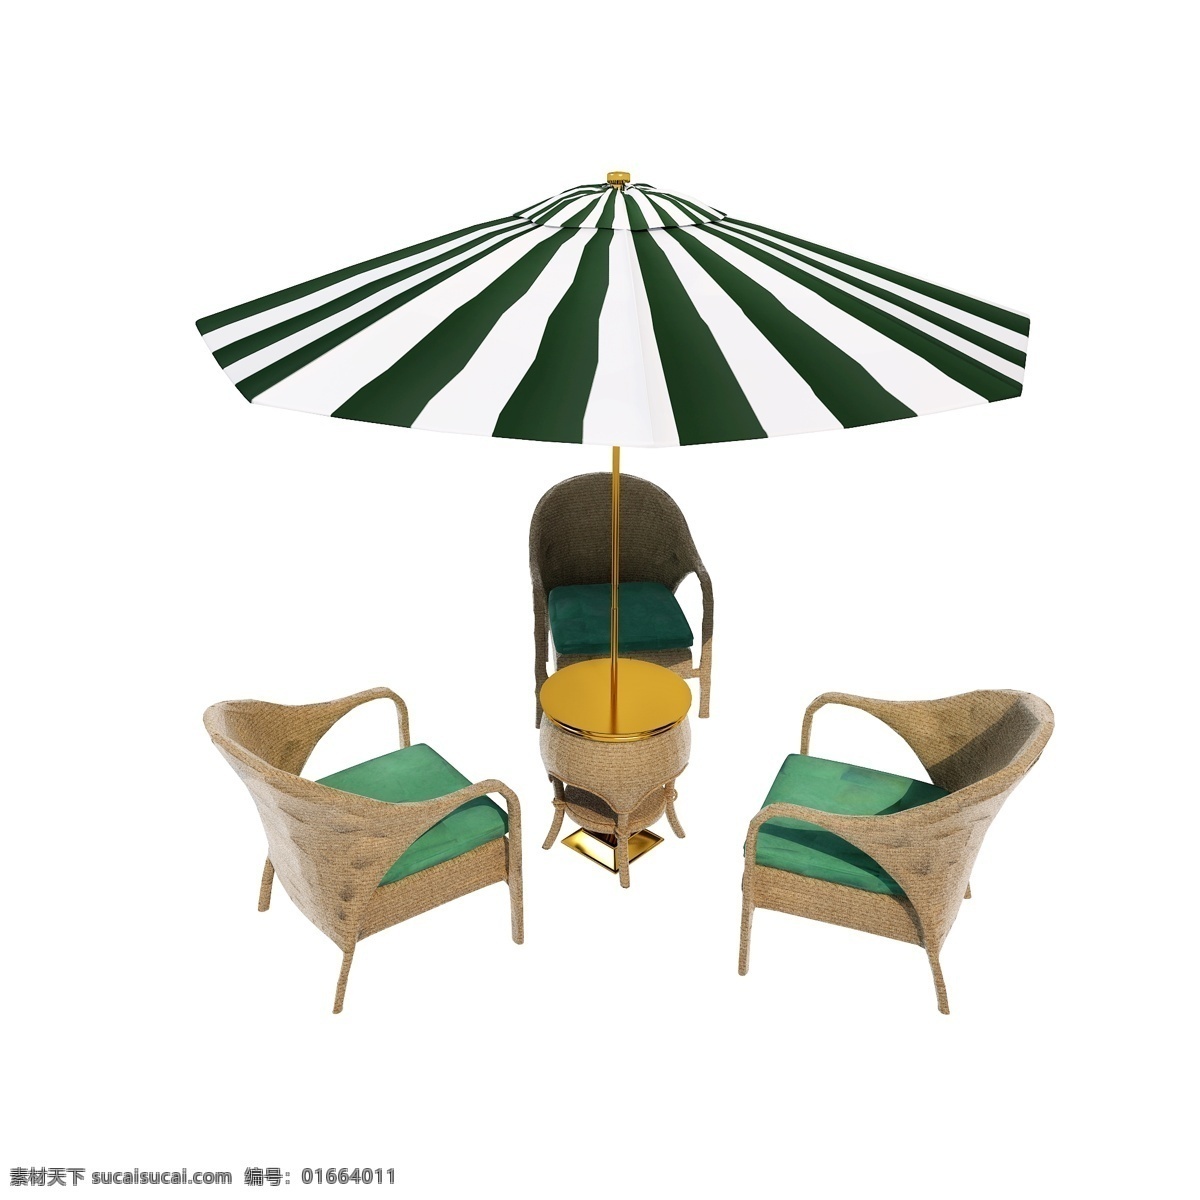 夏季 遮阳伞 图 藤椅 座椅 防晒 精致 质感 仿真 户外 套图